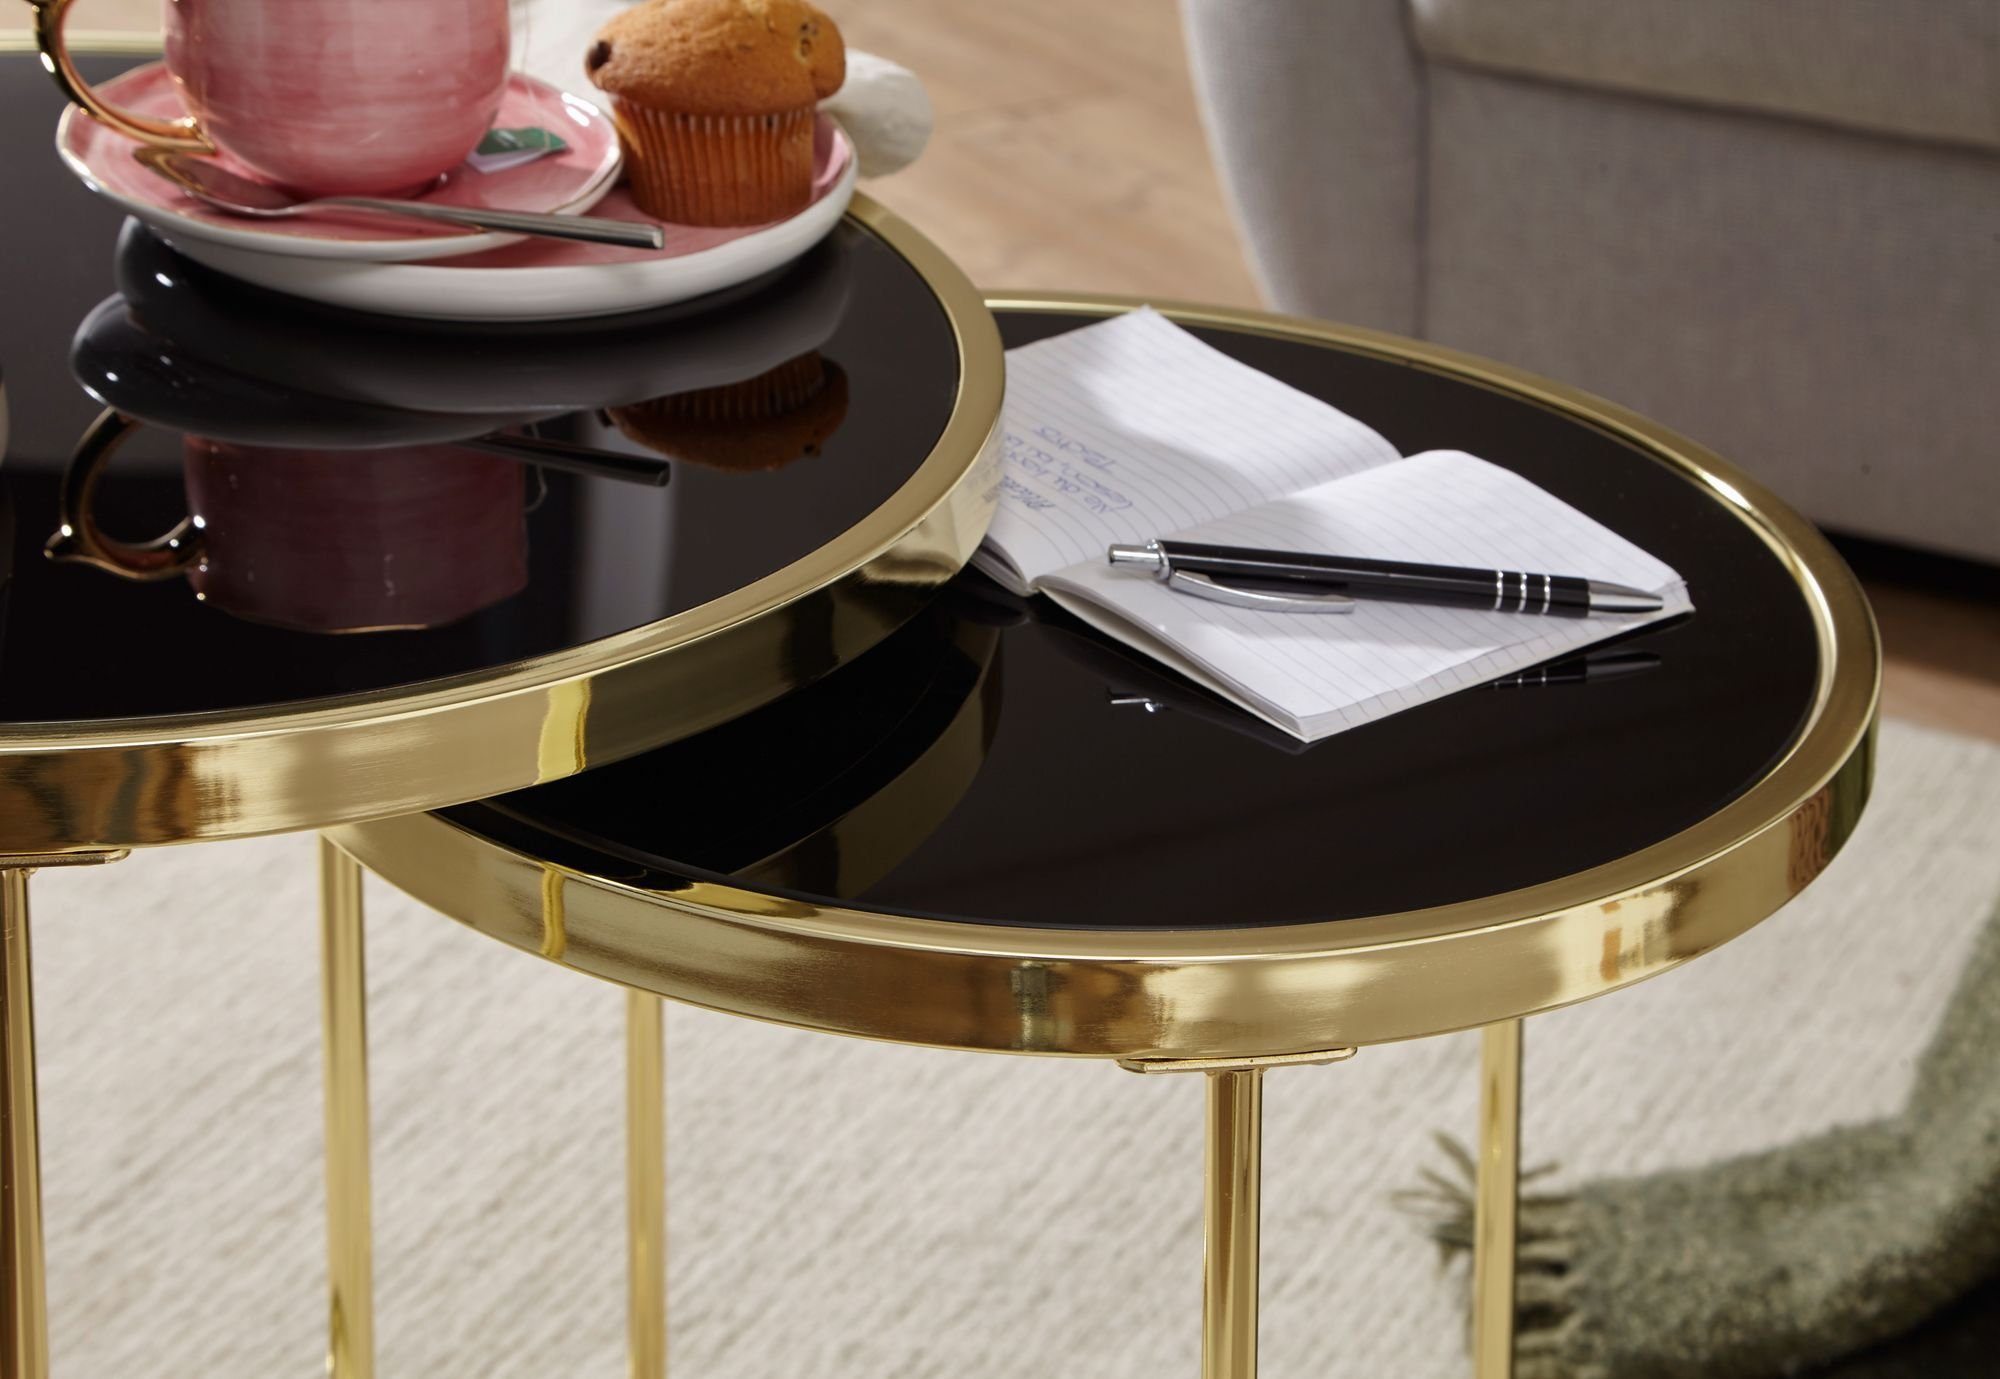 Metall Tischen, zwei FB49696 / Wohnzimmertisch / Glas), Gold Set Beistelltisch Satztisch FINEBUY Couchtisch aus (Schwarz